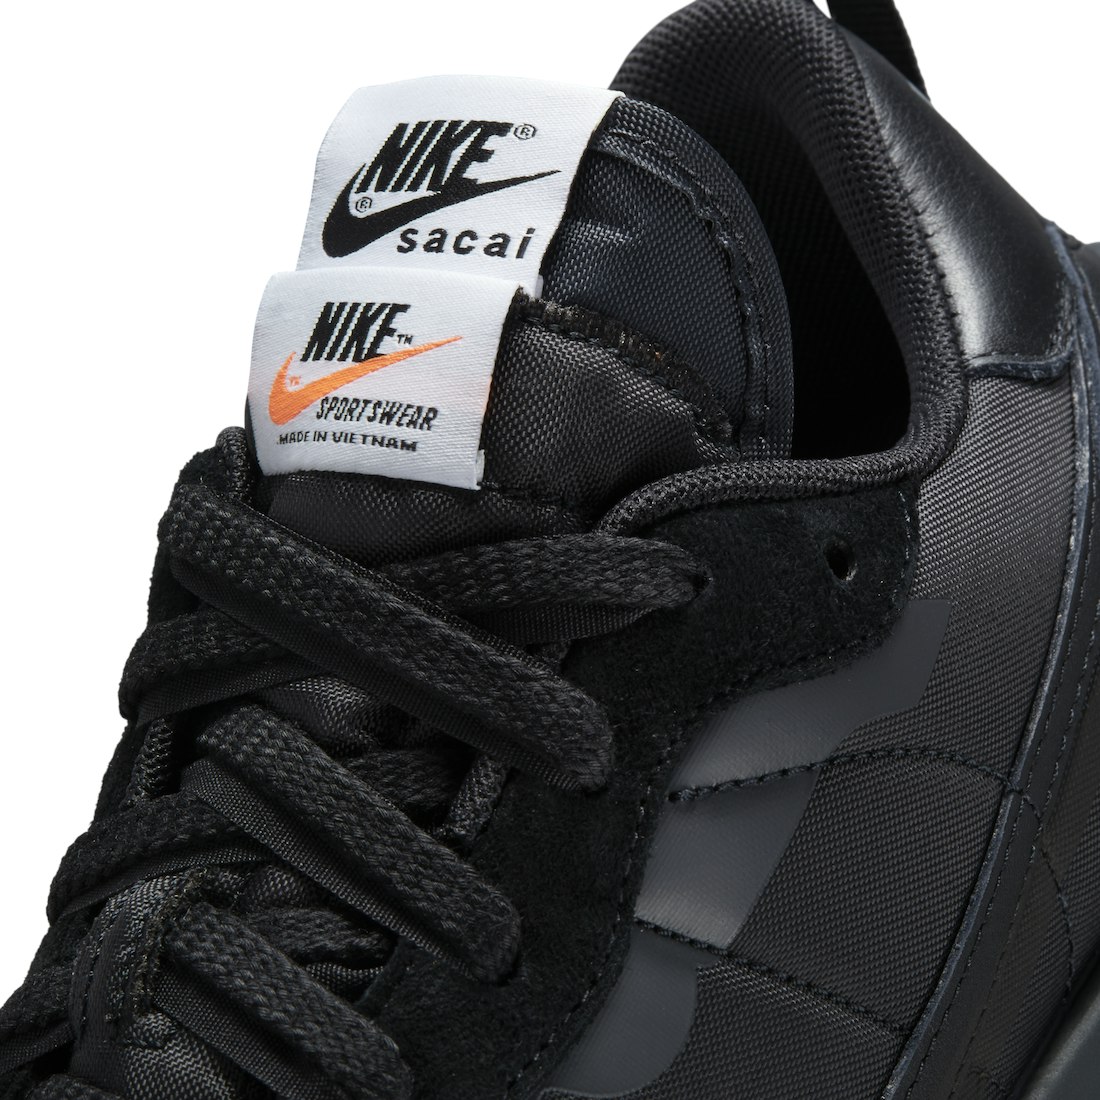 Sacai x Nike Vaporwaffle "Black Gum"